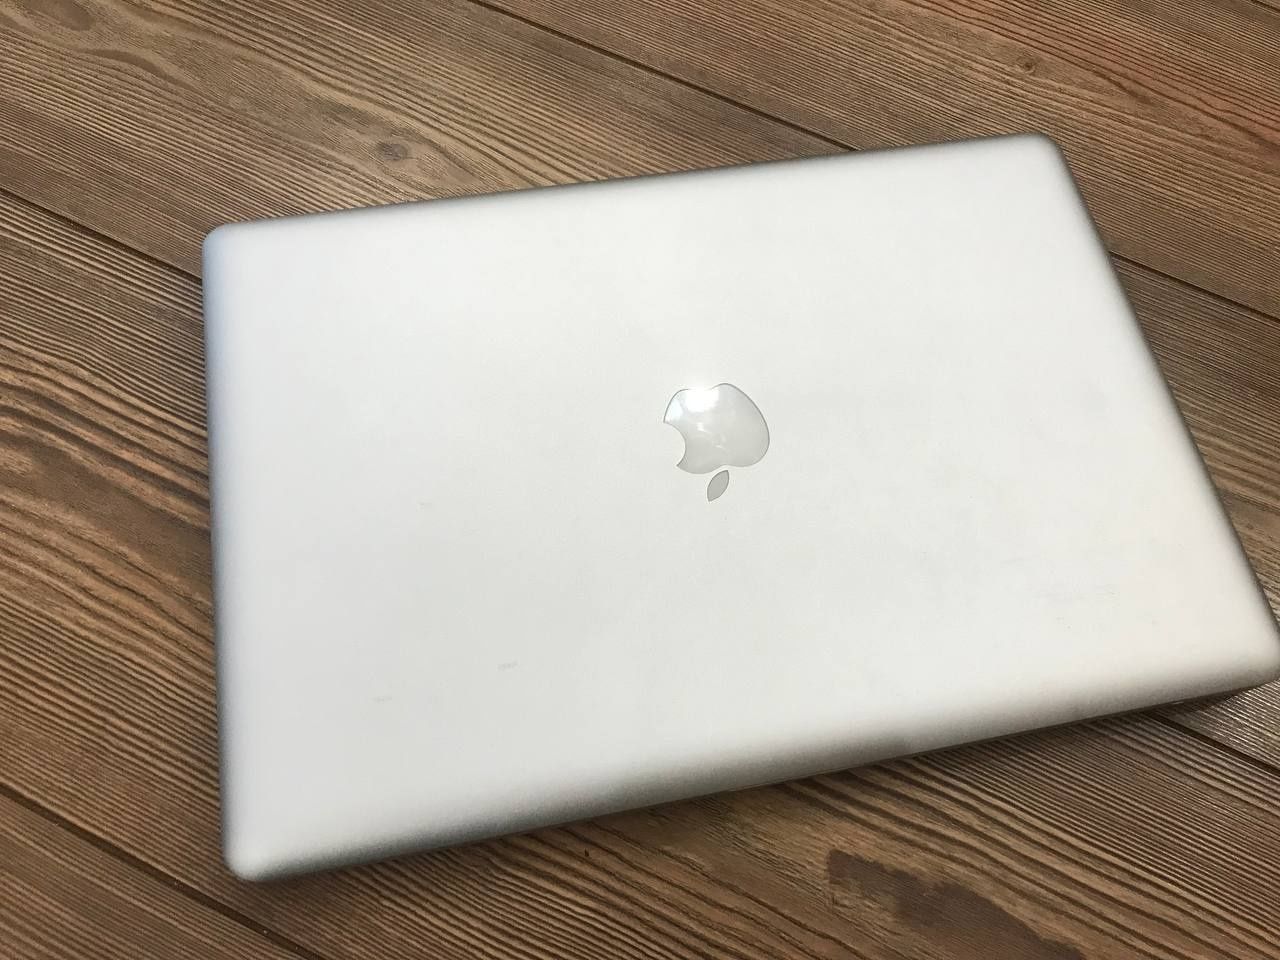 MacBook Pro 15' 2011